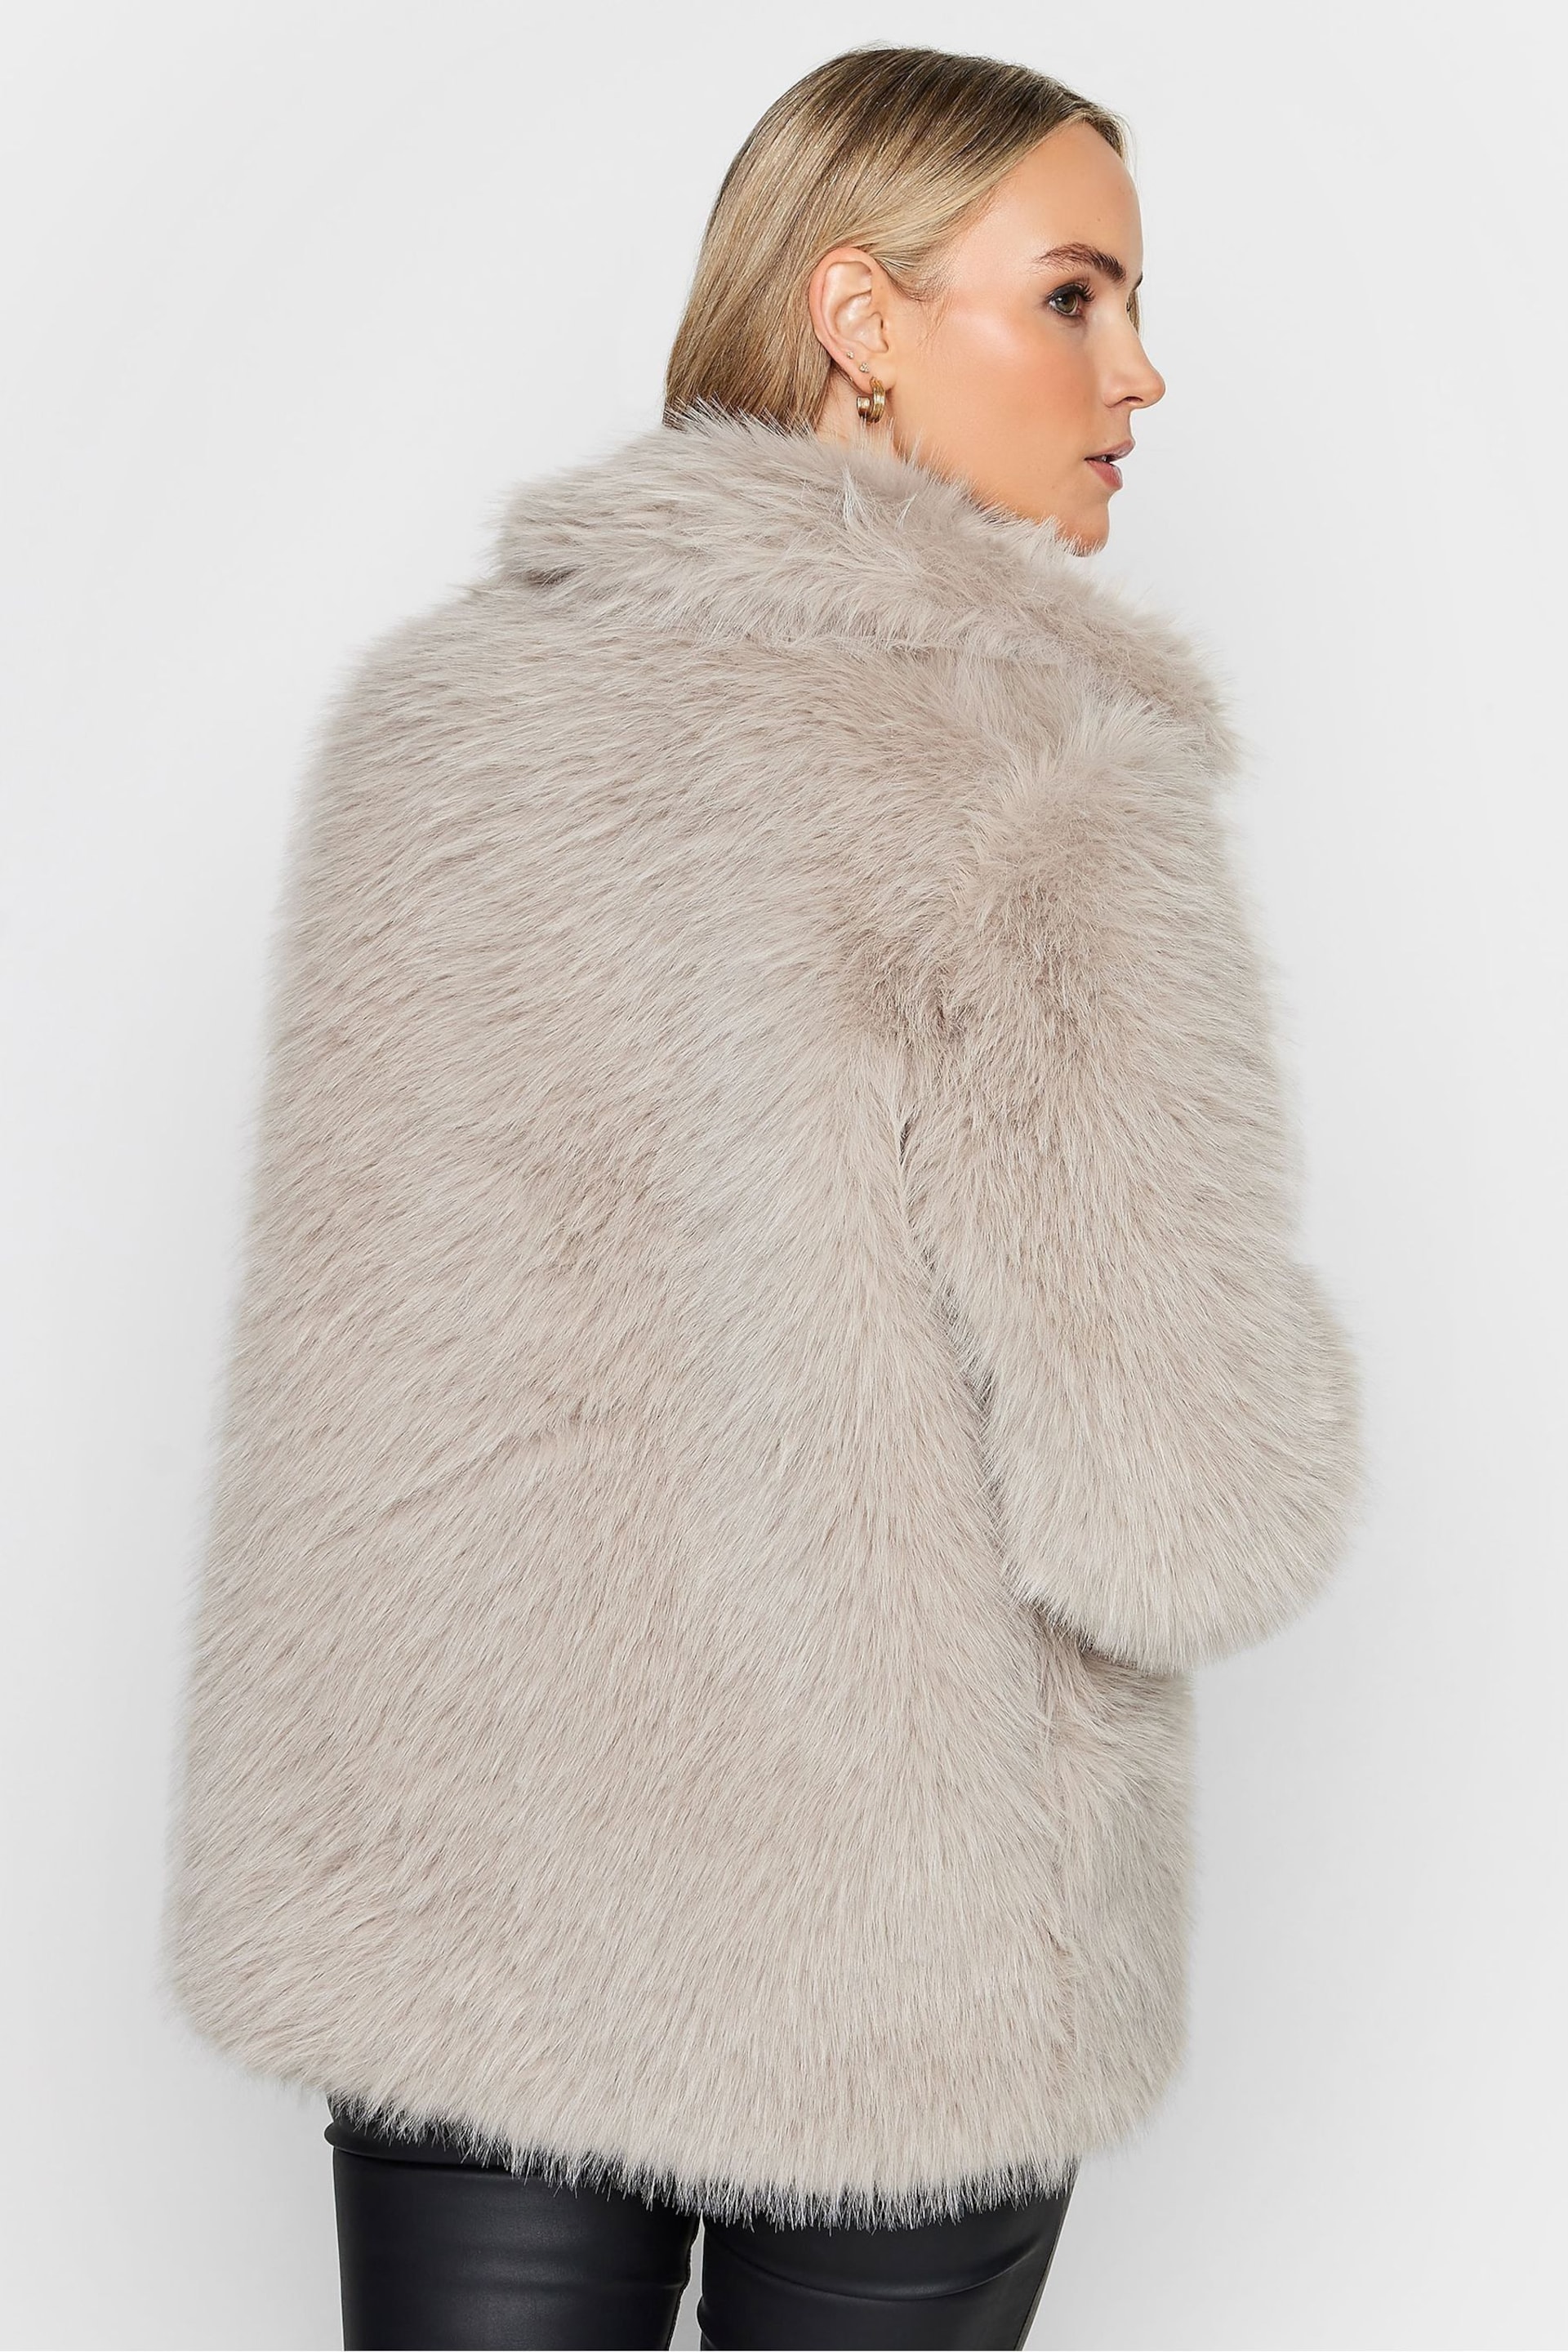 Long Tall Sally Natural Long Faux Fur Coats - Image 2 of 5